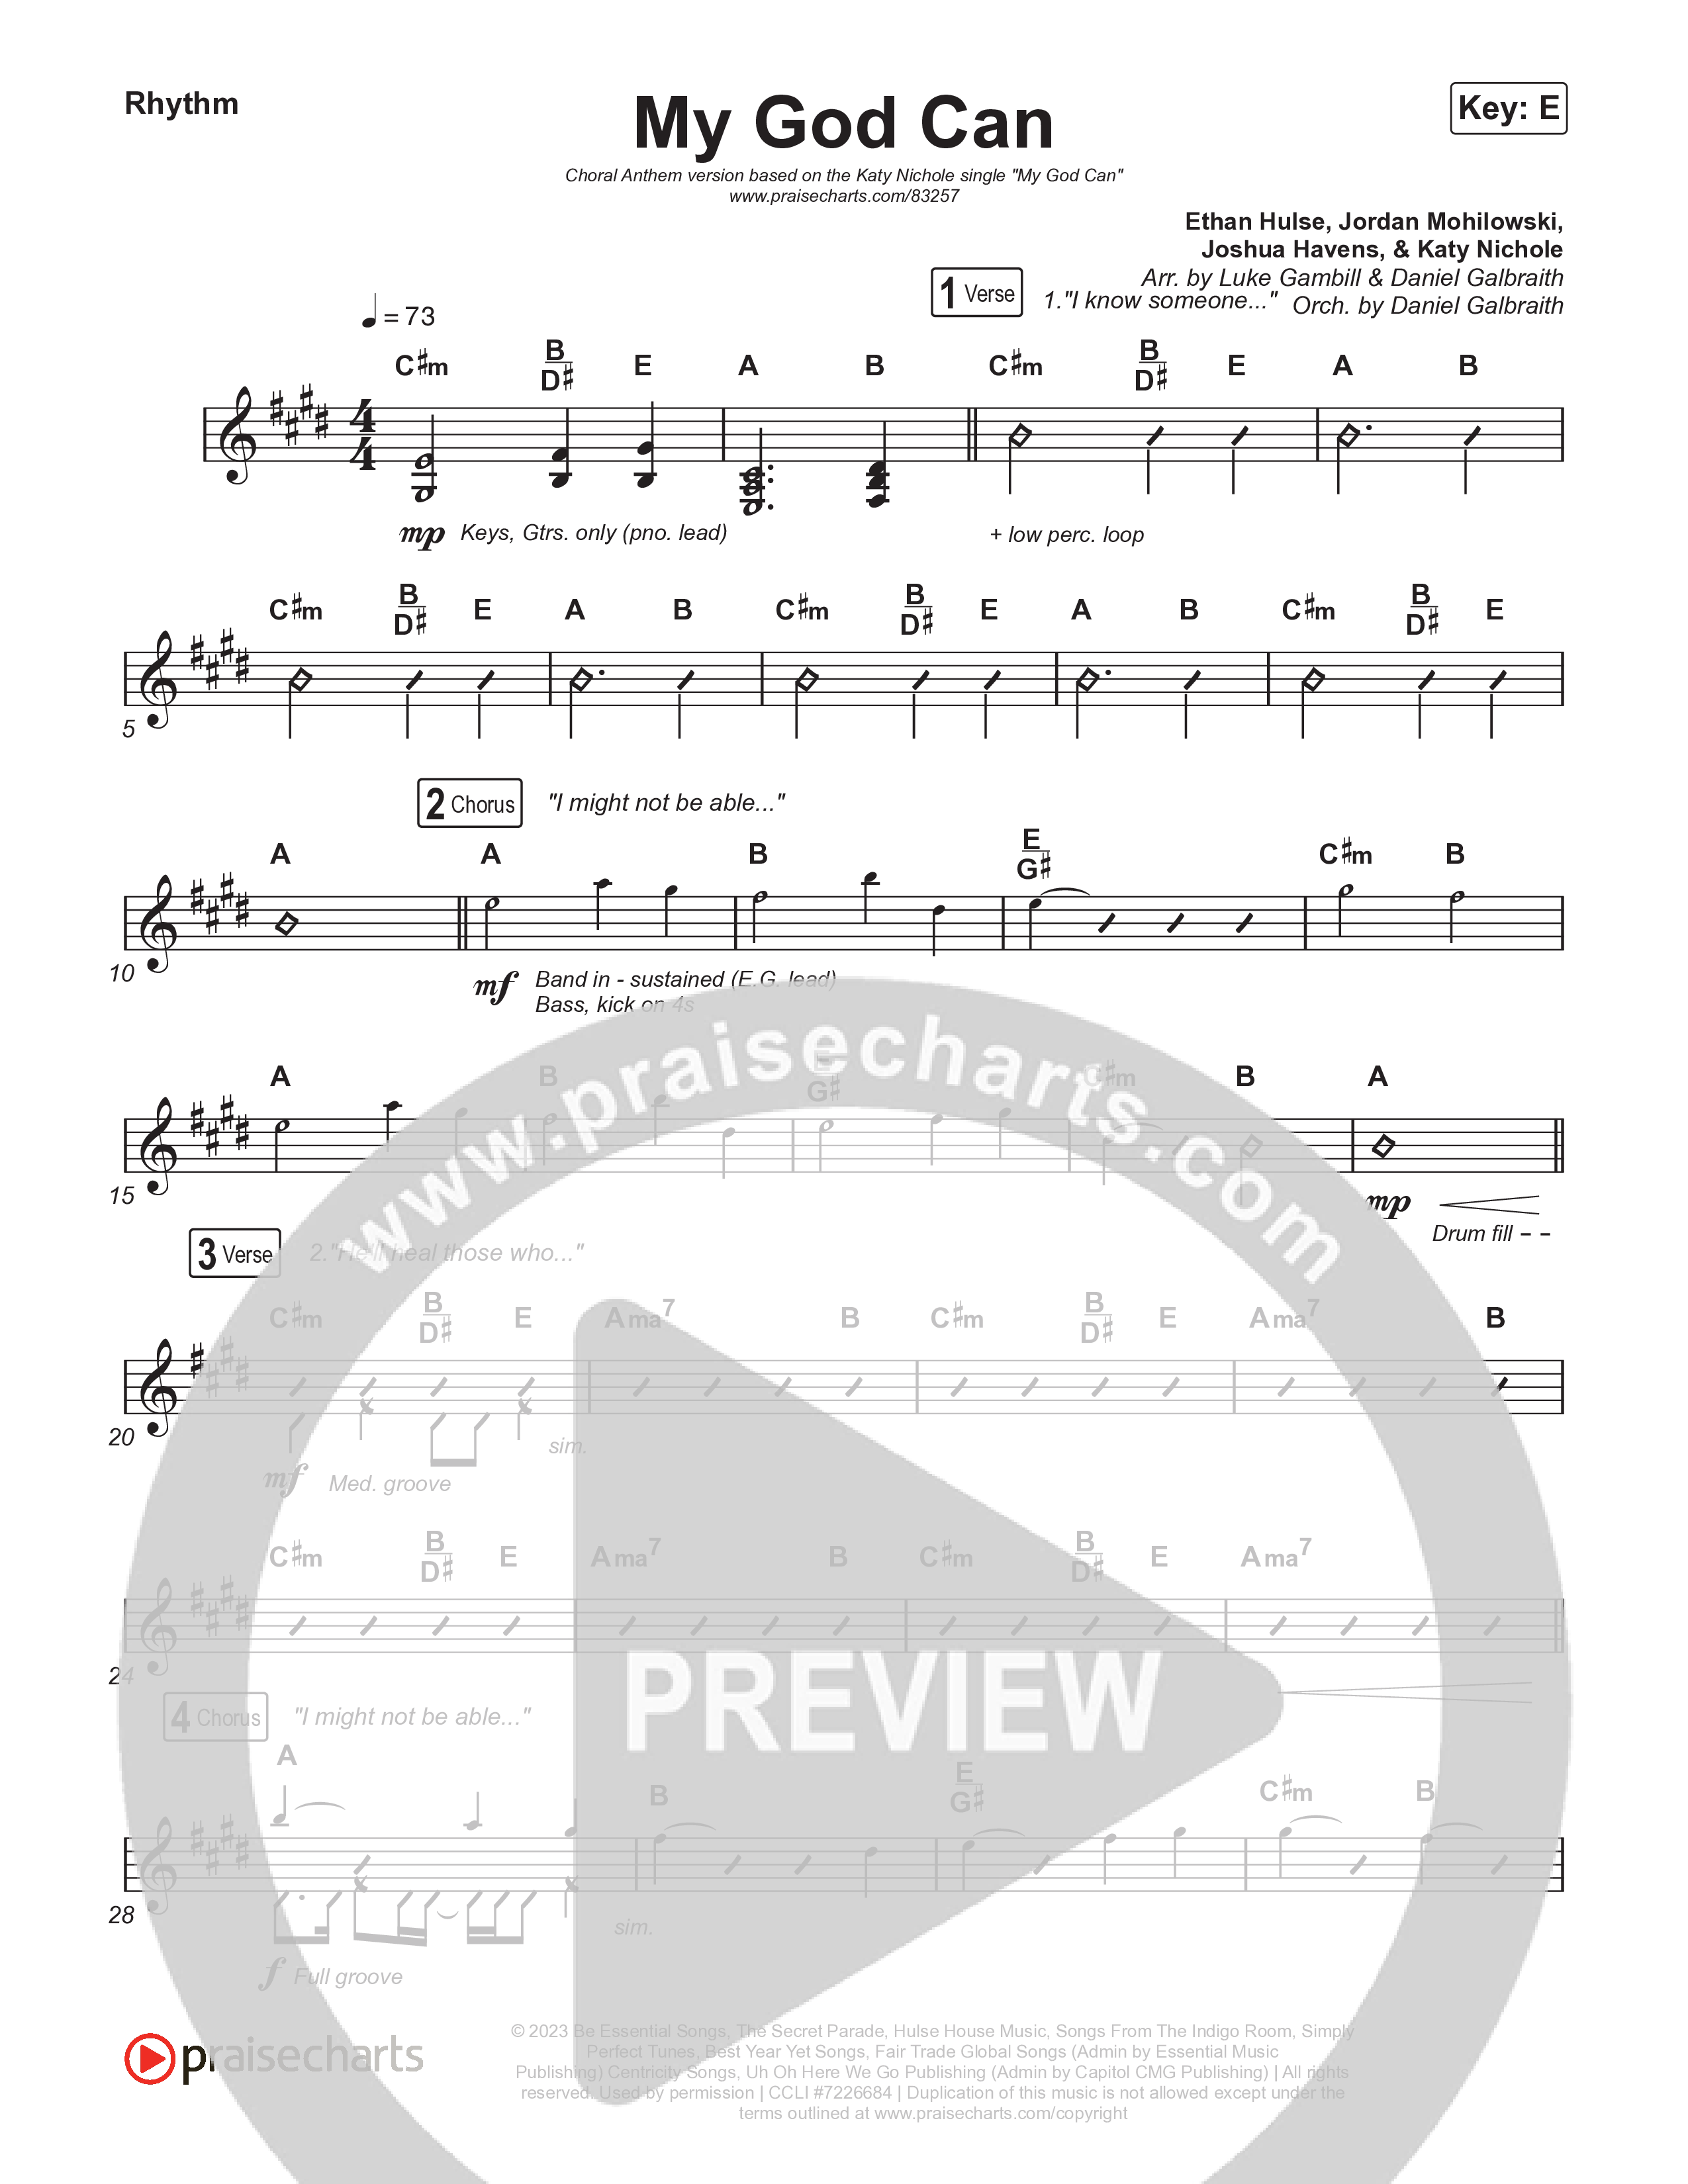 My God Can (Choral Anthem SATB) Rhythm Pack (Katy Nichole / Naomi Raine / Arr. Luke Gambill)